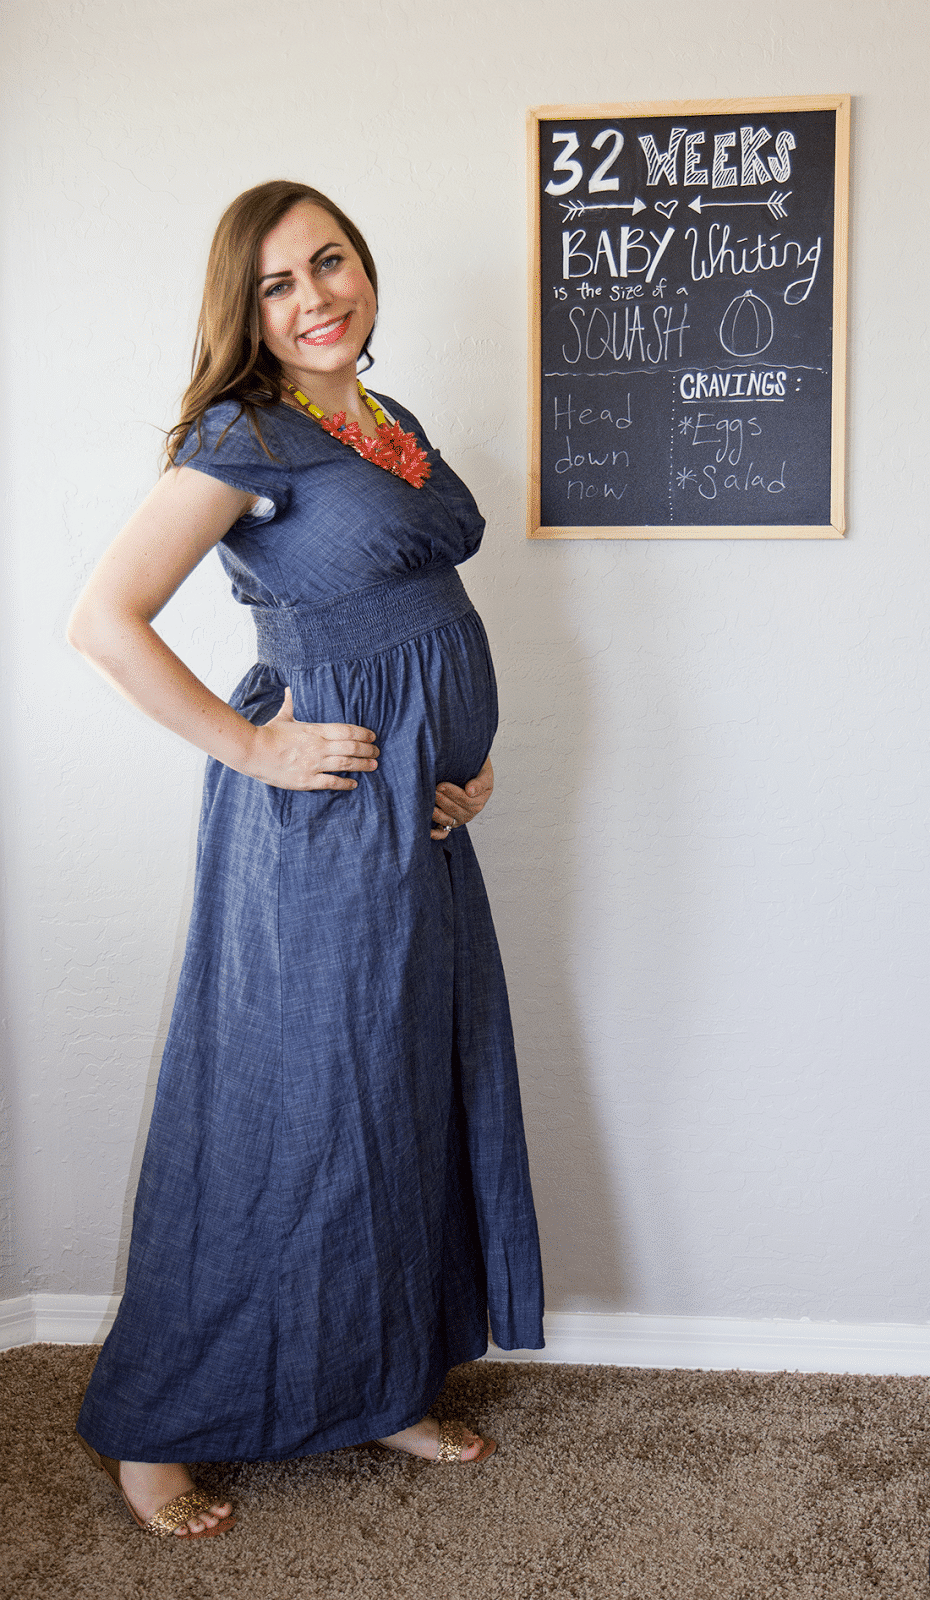 Pregnancy Update: 32 Weeks